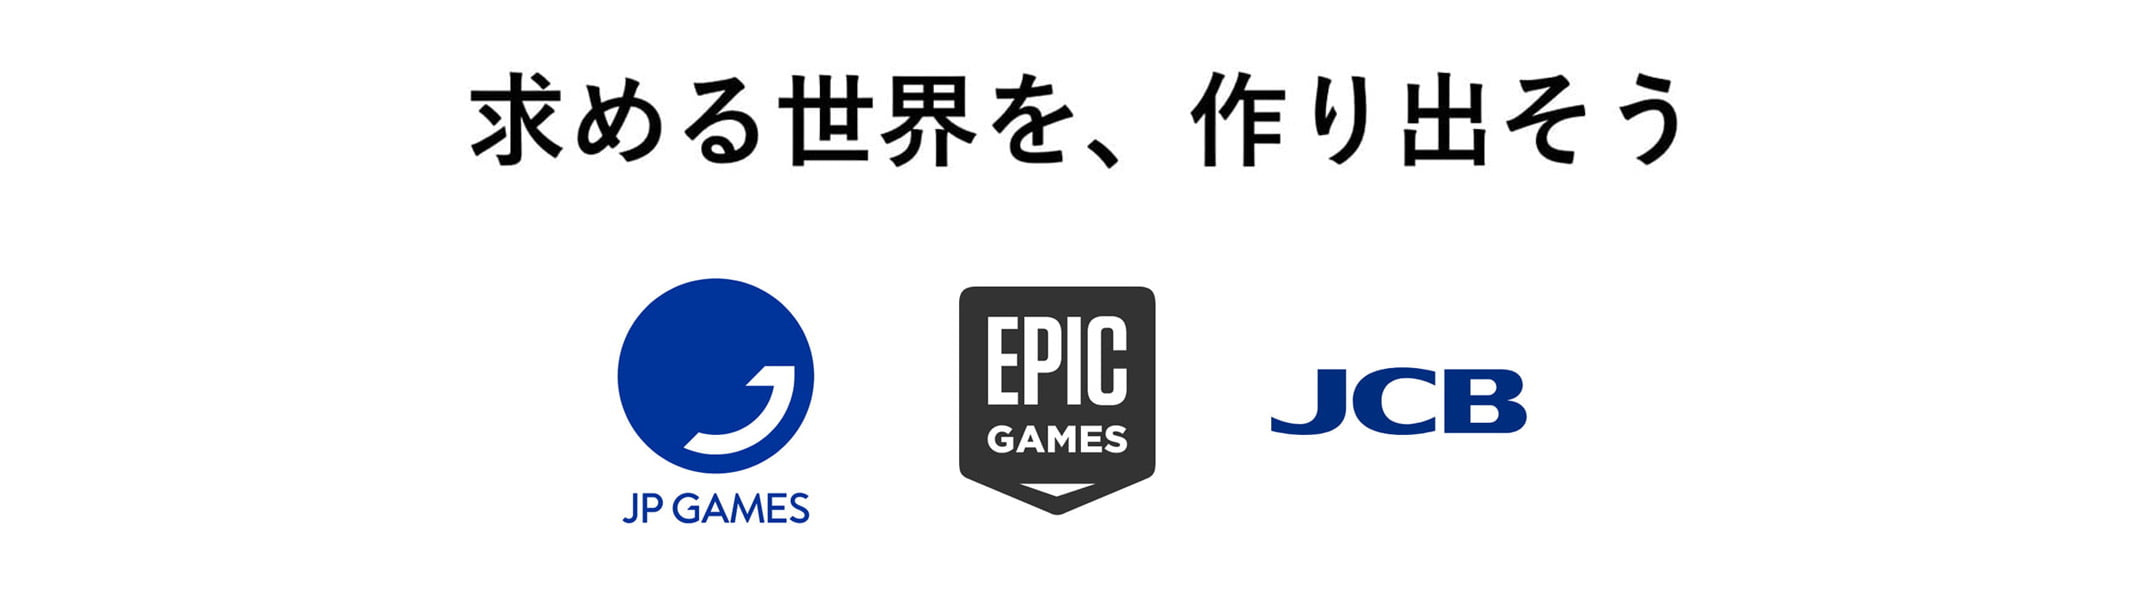 メタバース空間構築フレームワーク「PEGASUS WORLD KIT」 Epic Games の Unreal Engine を活用し、JCB、ソラミツと共に提供へ